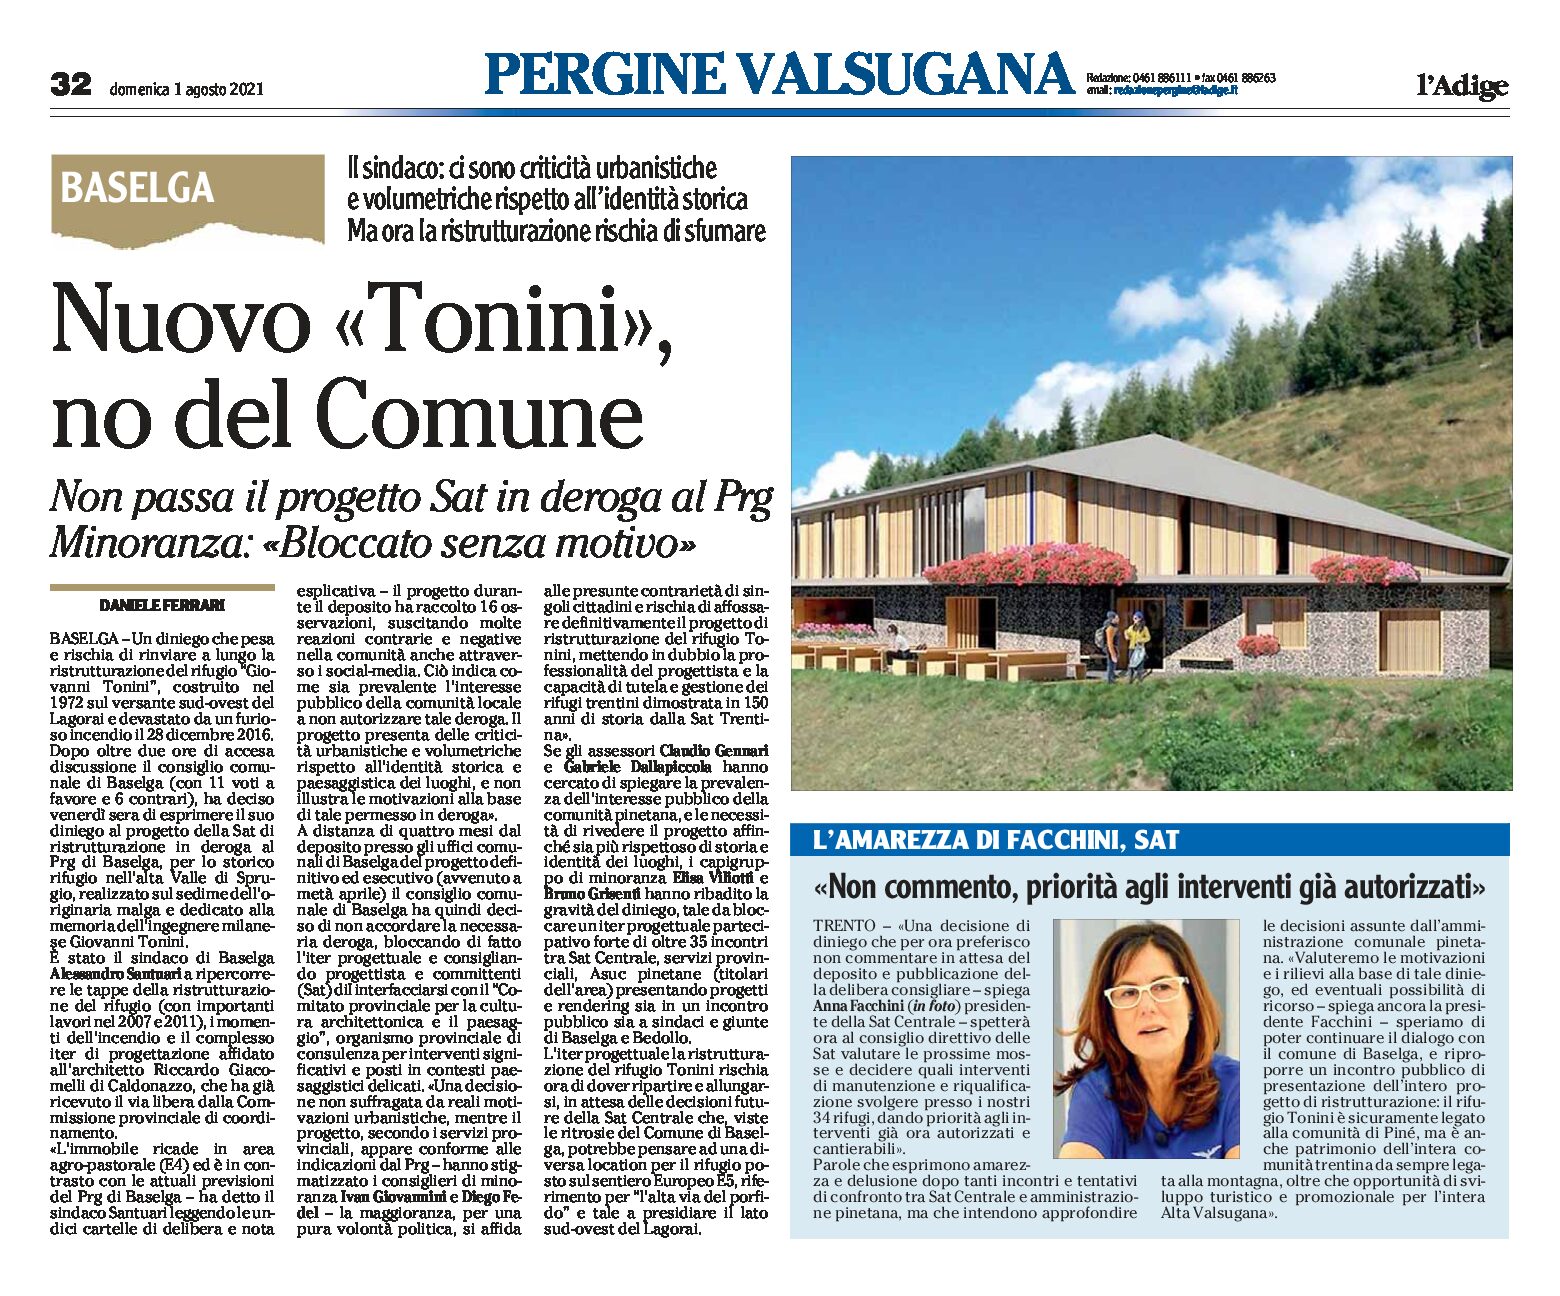 Baselga: “no” del Comune al progetto del rifugio Tonini in deroga al Prg